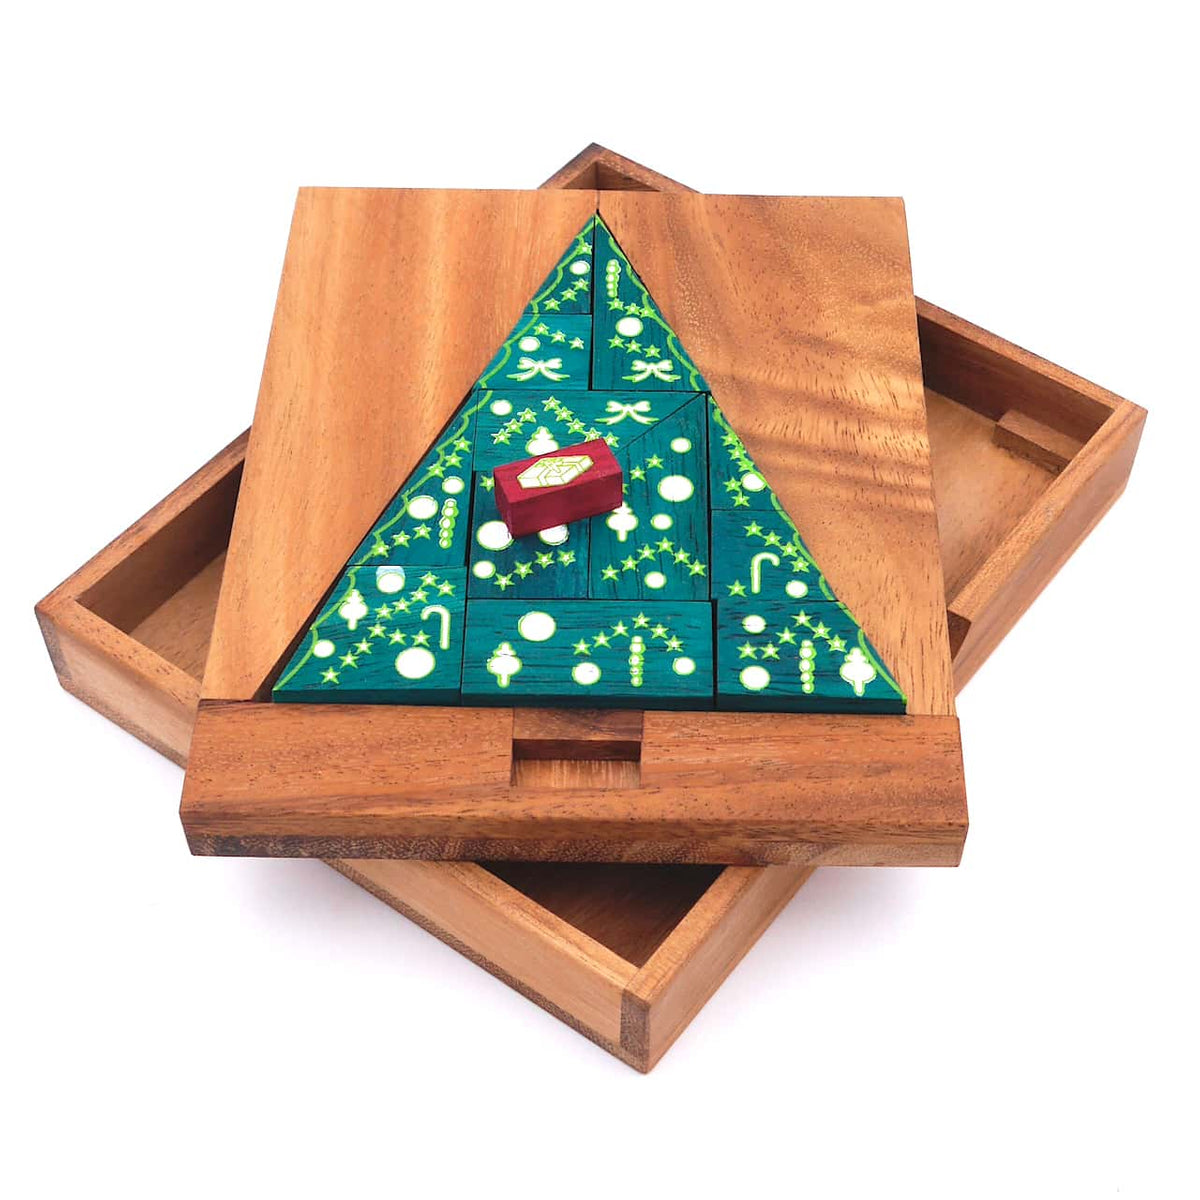 Ein farbenfrohes Denkspiel mit verschiedenen geometrischen Formen, die zu einem Weihnachtsbaum zusammengefügt sind.